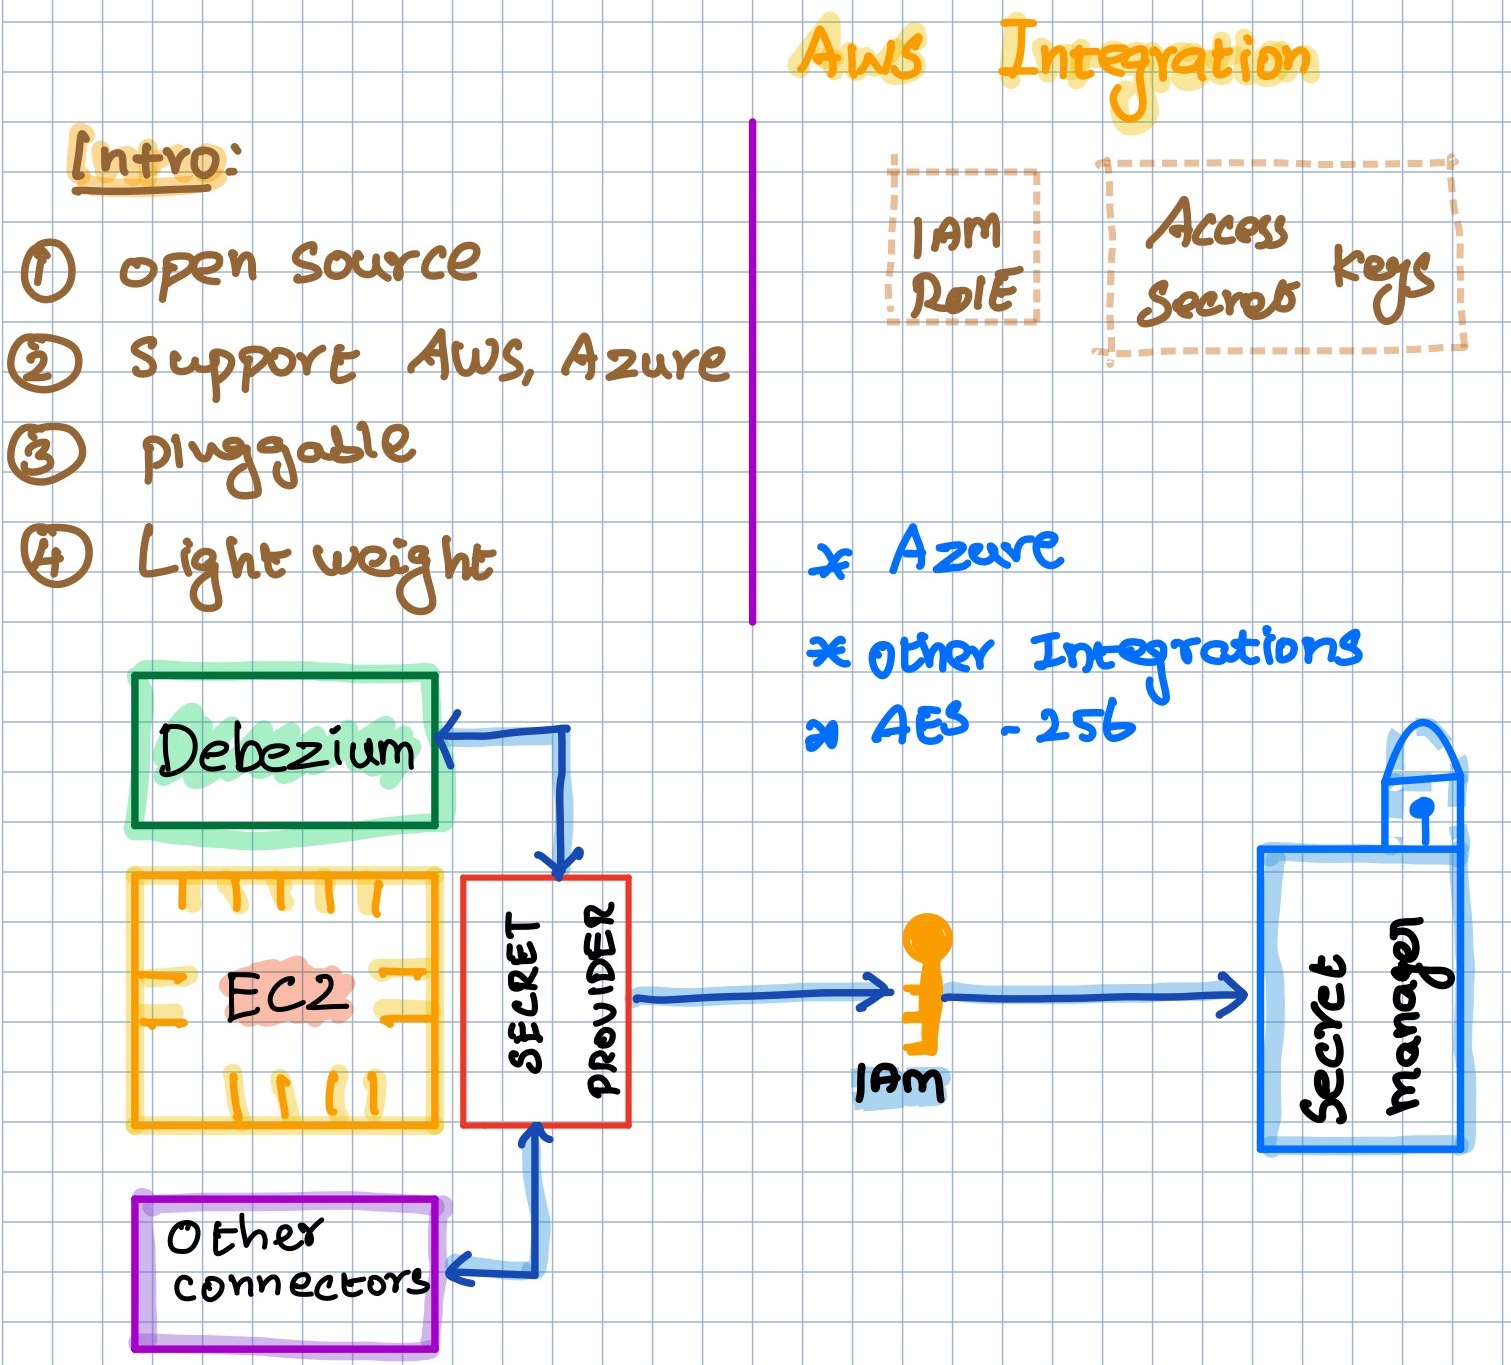 Integrate Debezium with AWS Secret Manager For Retrieving Passwords